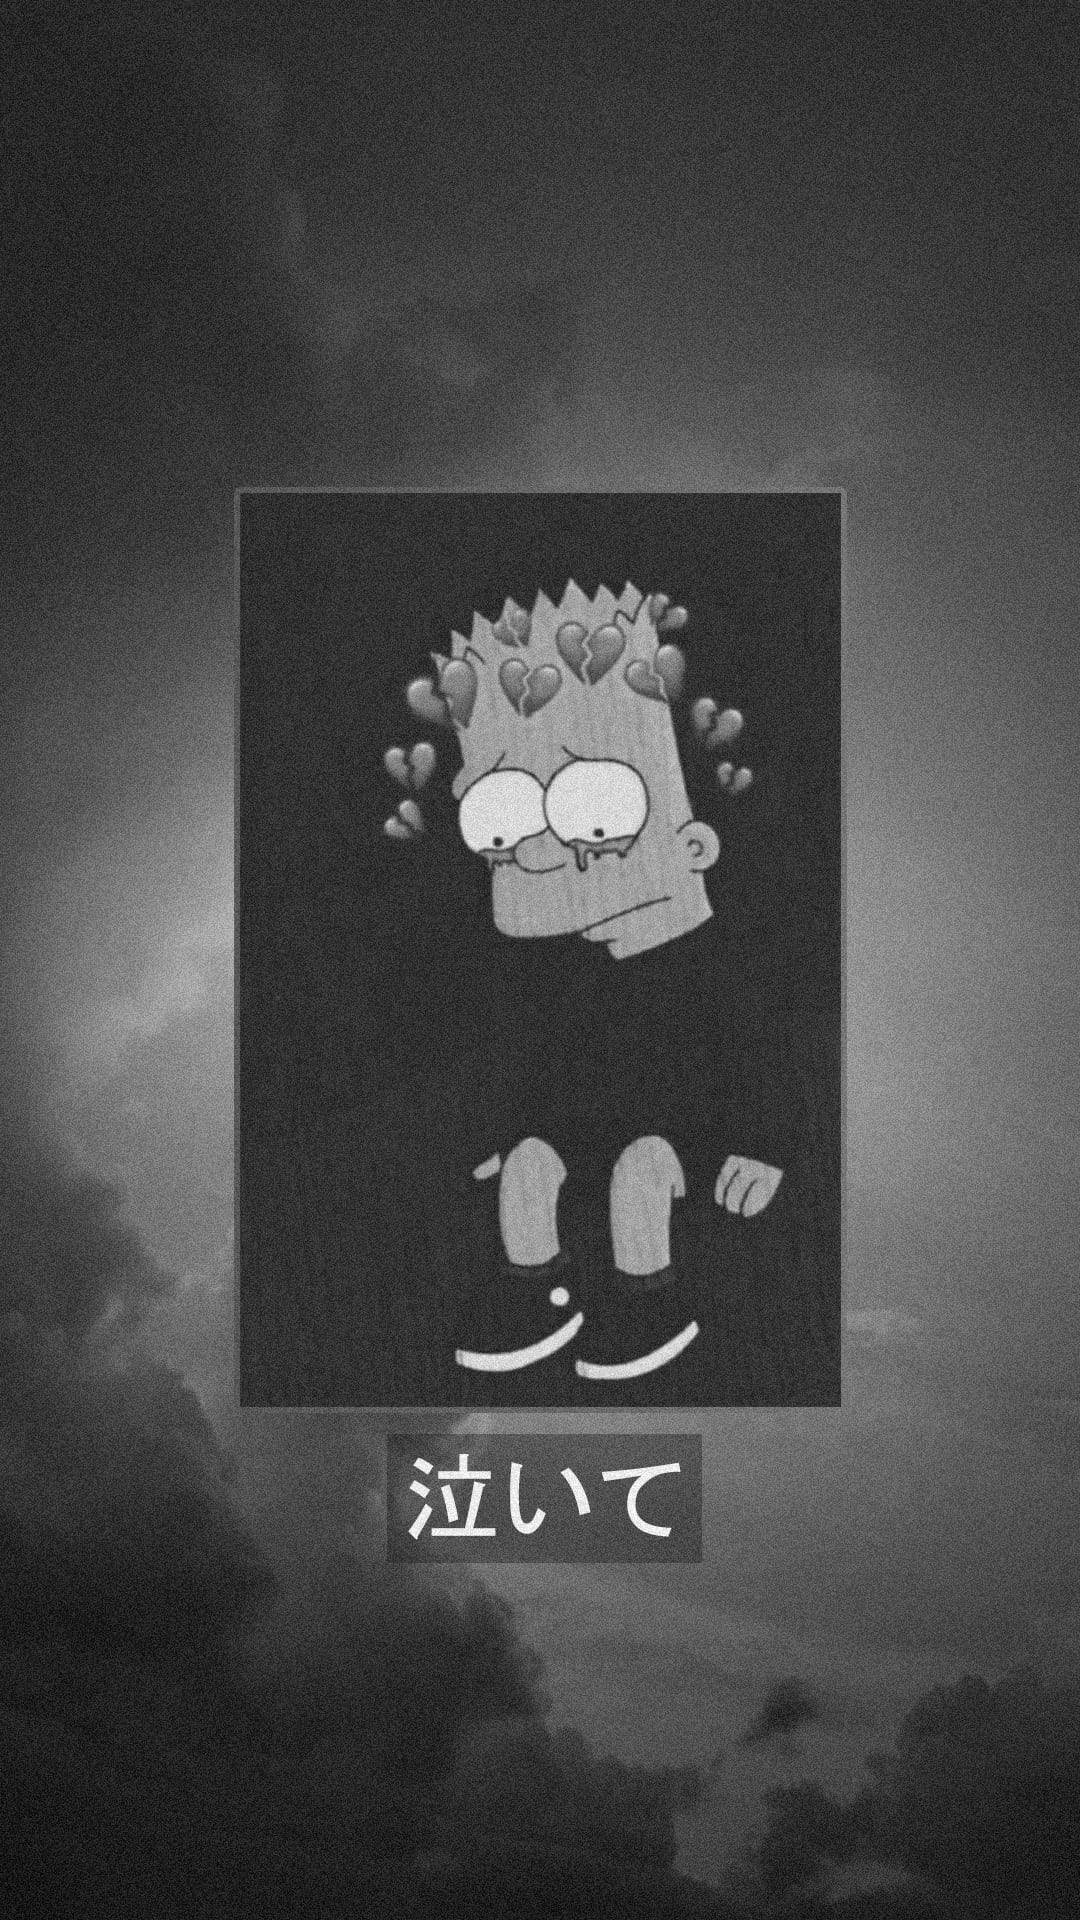 Bart Sad Cloudy Wallpaper